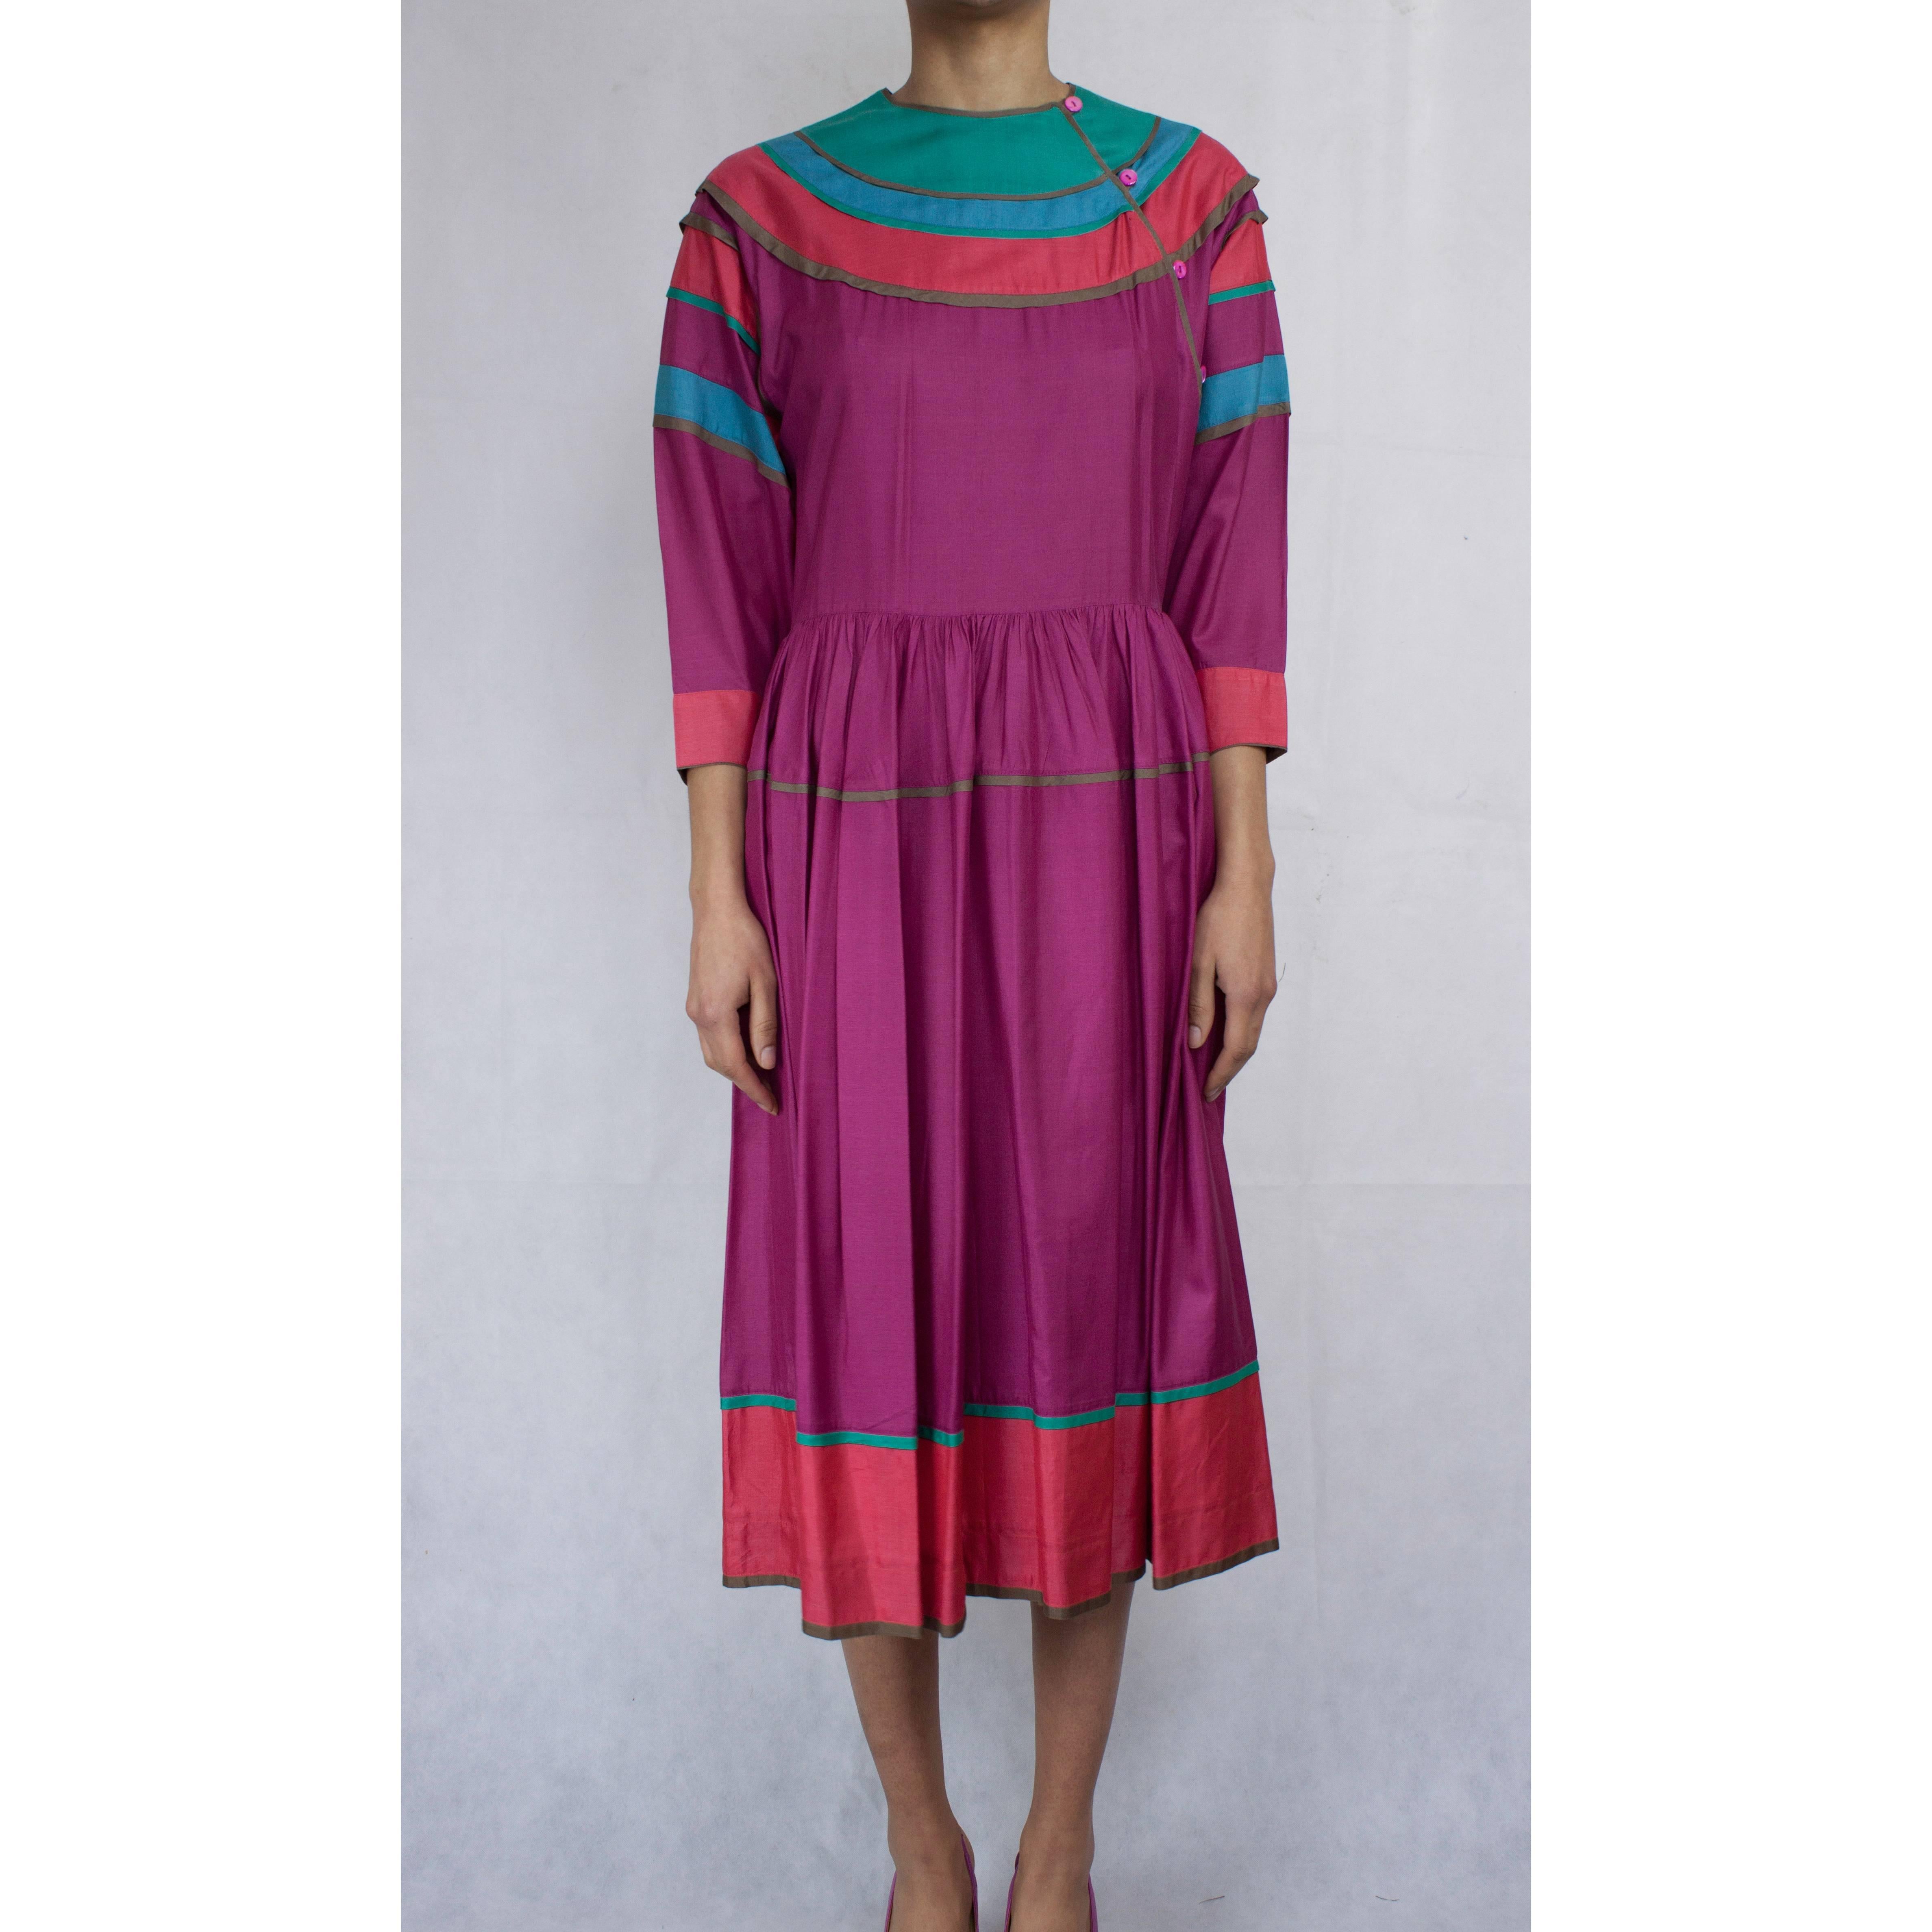 Dieses Kleid, das der legendäre Kenzo Takada 1980 entwarf, illustriert auf wunderbare Weise die grenz-, farb- und kulturübergreifende Ästhetik des Kultdesigners. Kenzo war eine ganz besondere Figur in der Pariser Modewelt und beeinflusste die